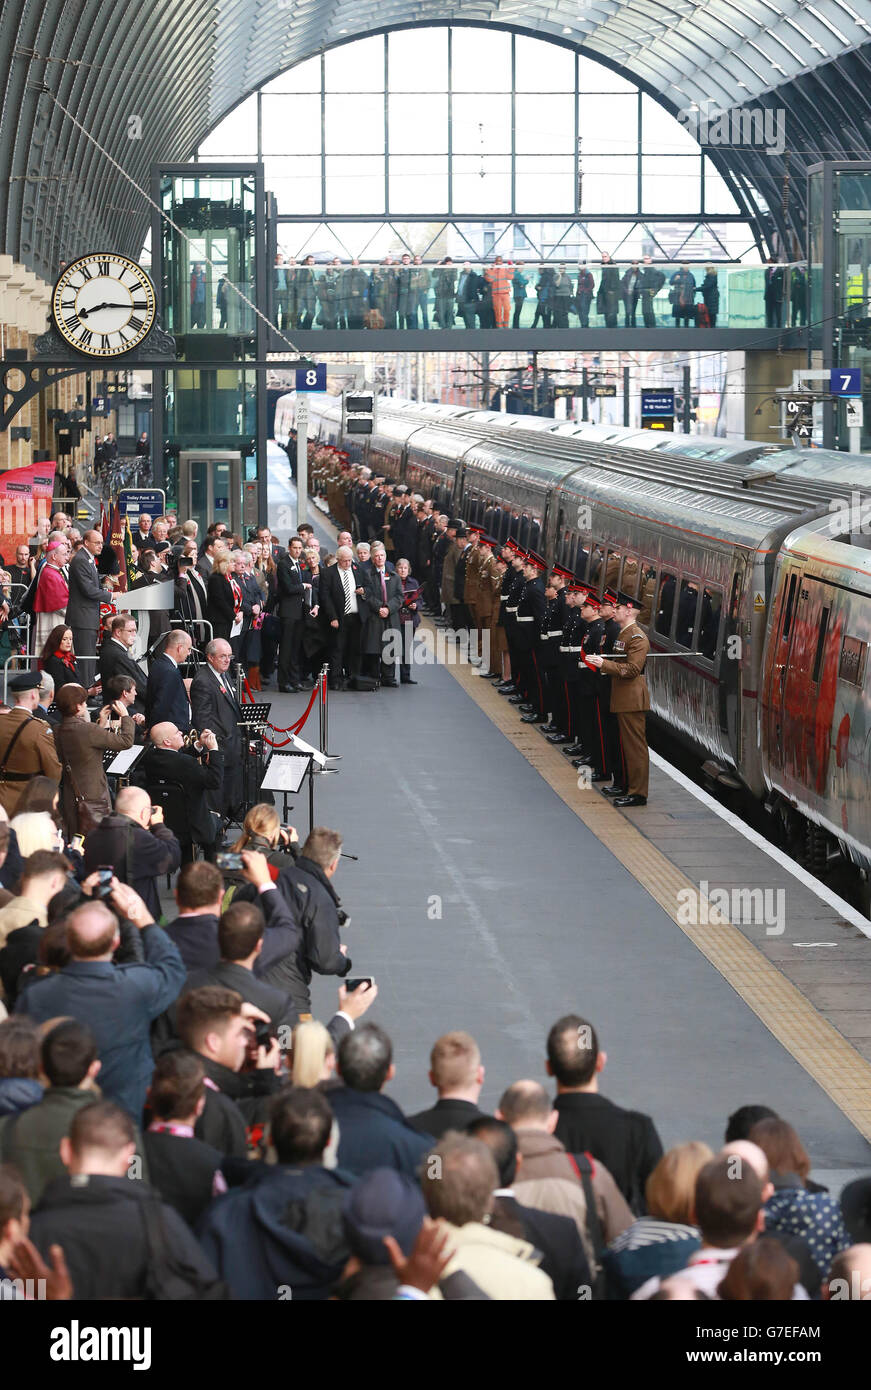 Le personnel militaire en service et vétéran effectue une garde d'honneur lors d'un événement en souvenir avec la locomotive de classe 91 spécialement livrée de la côte est, « pour les morts » (numéro 91111) à la gare de King's Cross à Londres. Banque D'Images